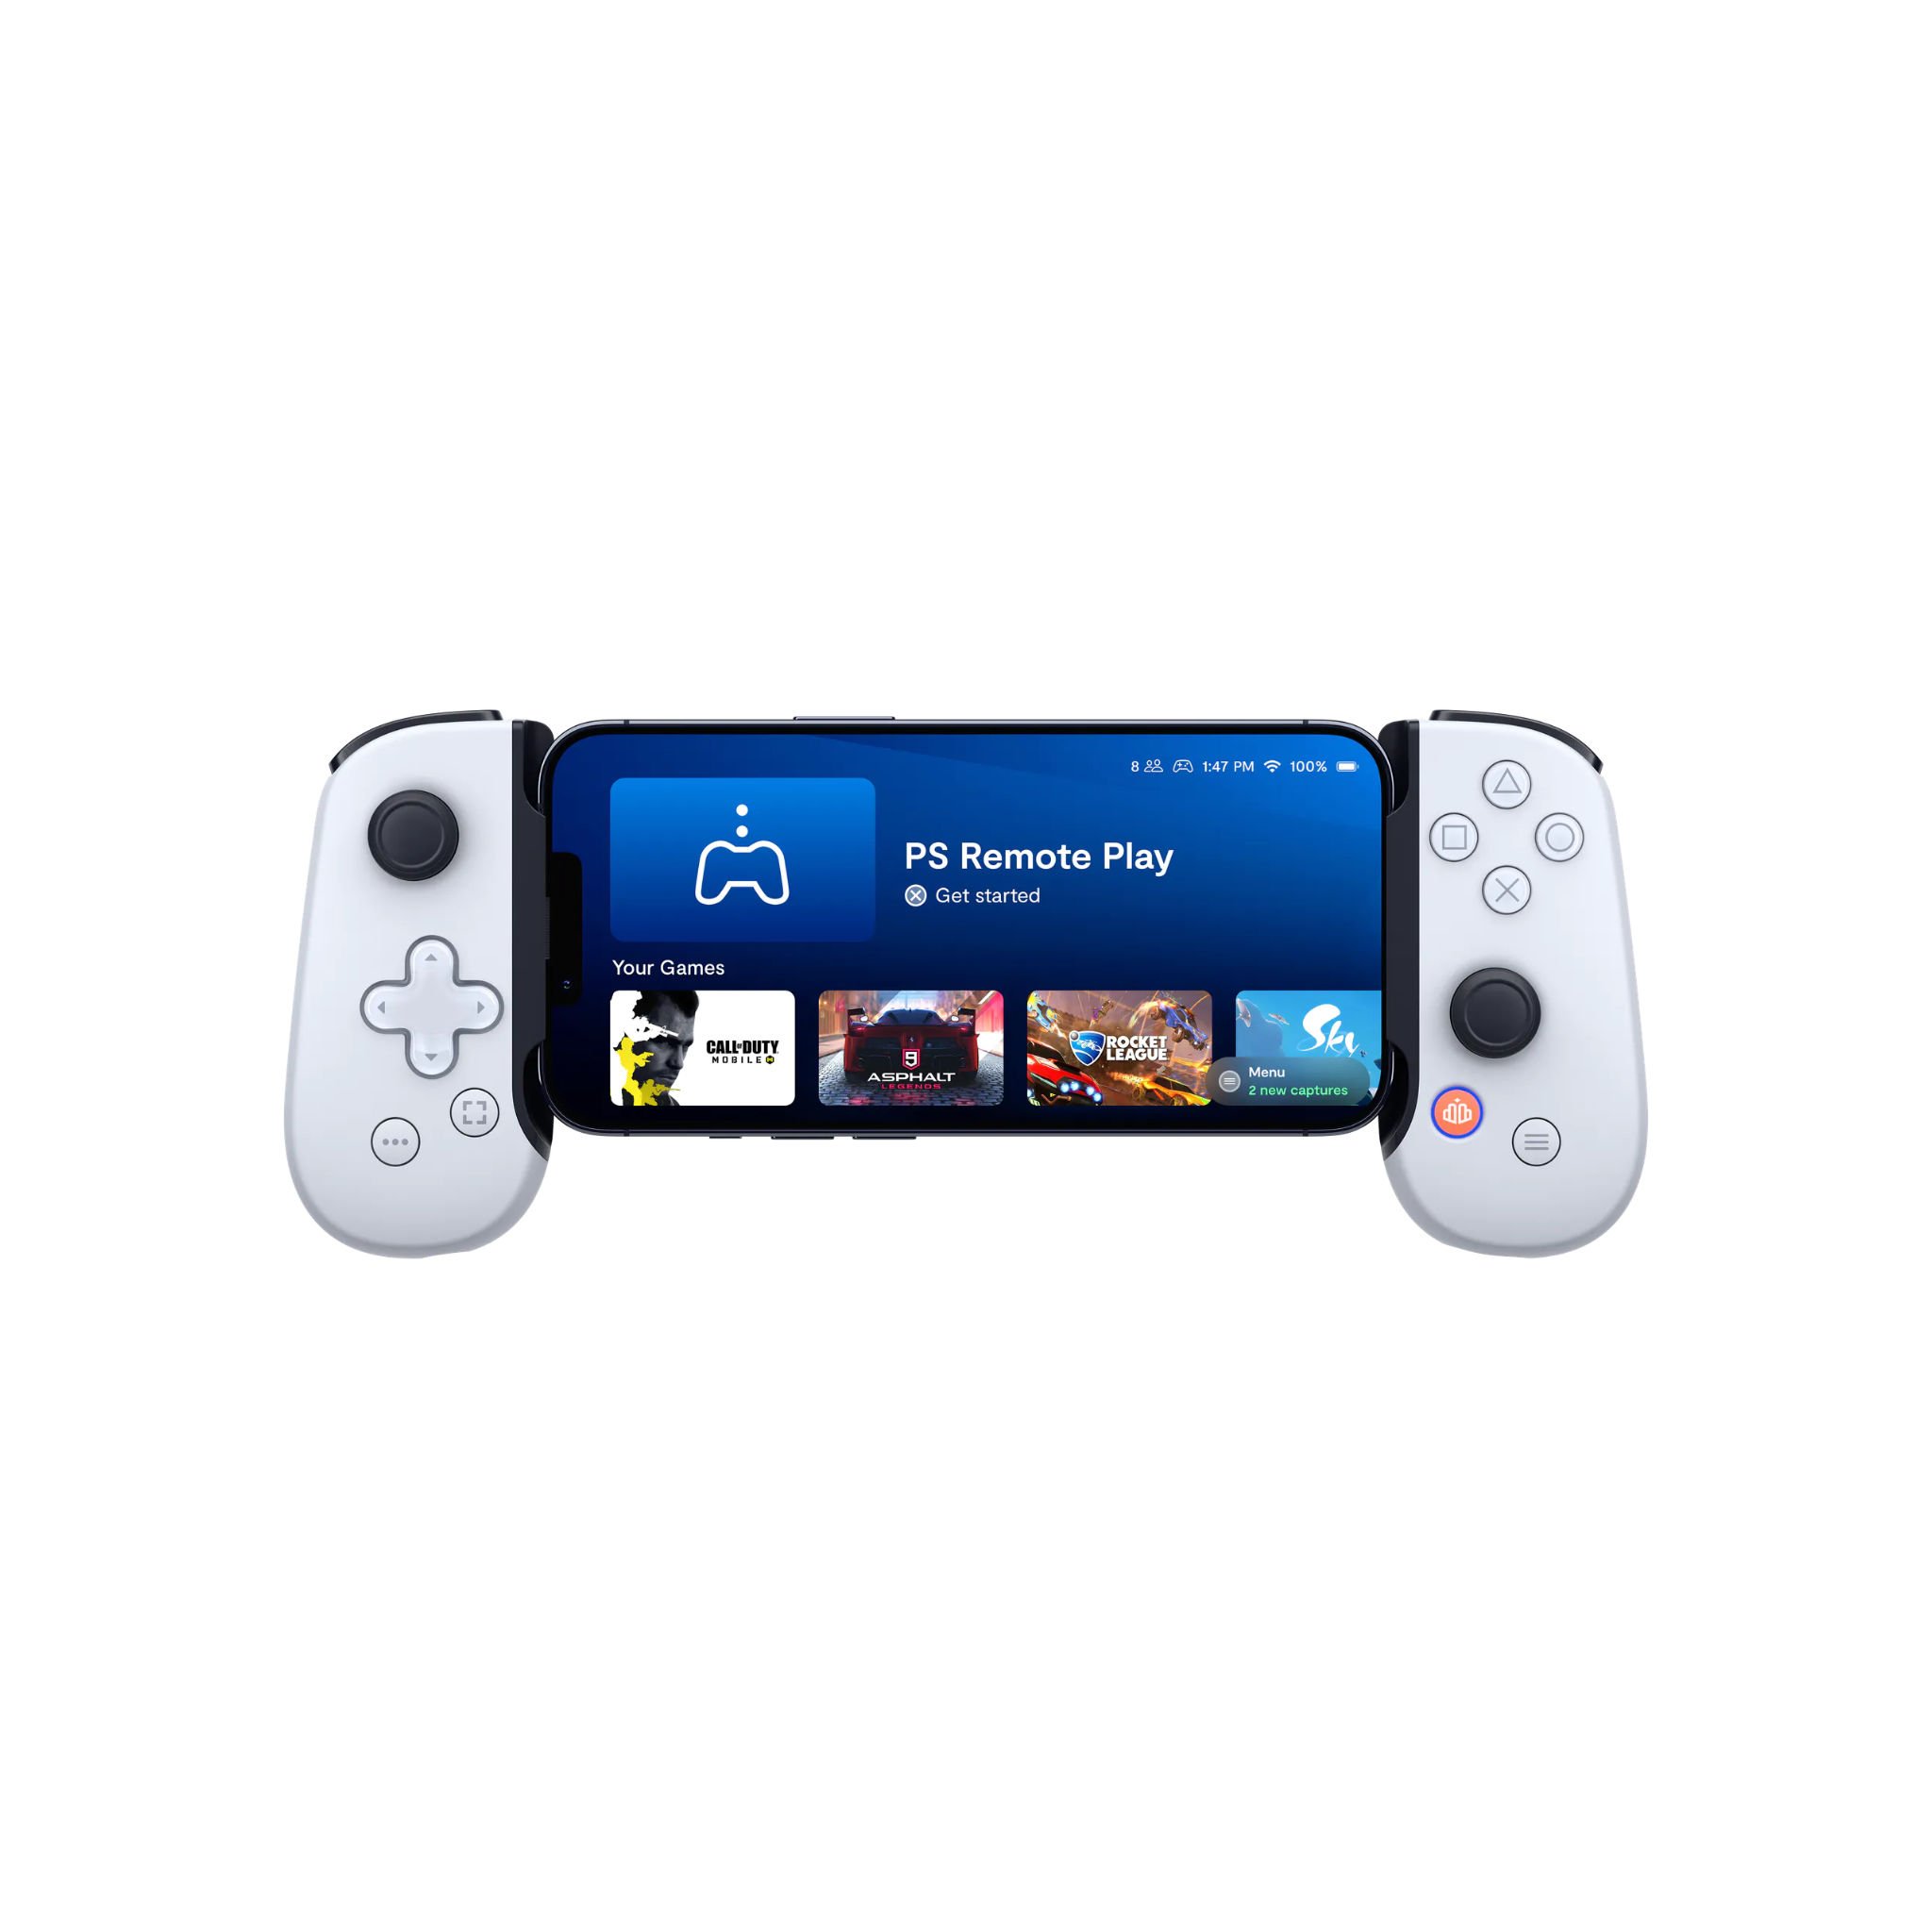 Tay cầm chơi game Backbone One - PlayStation Edition cho iPhone